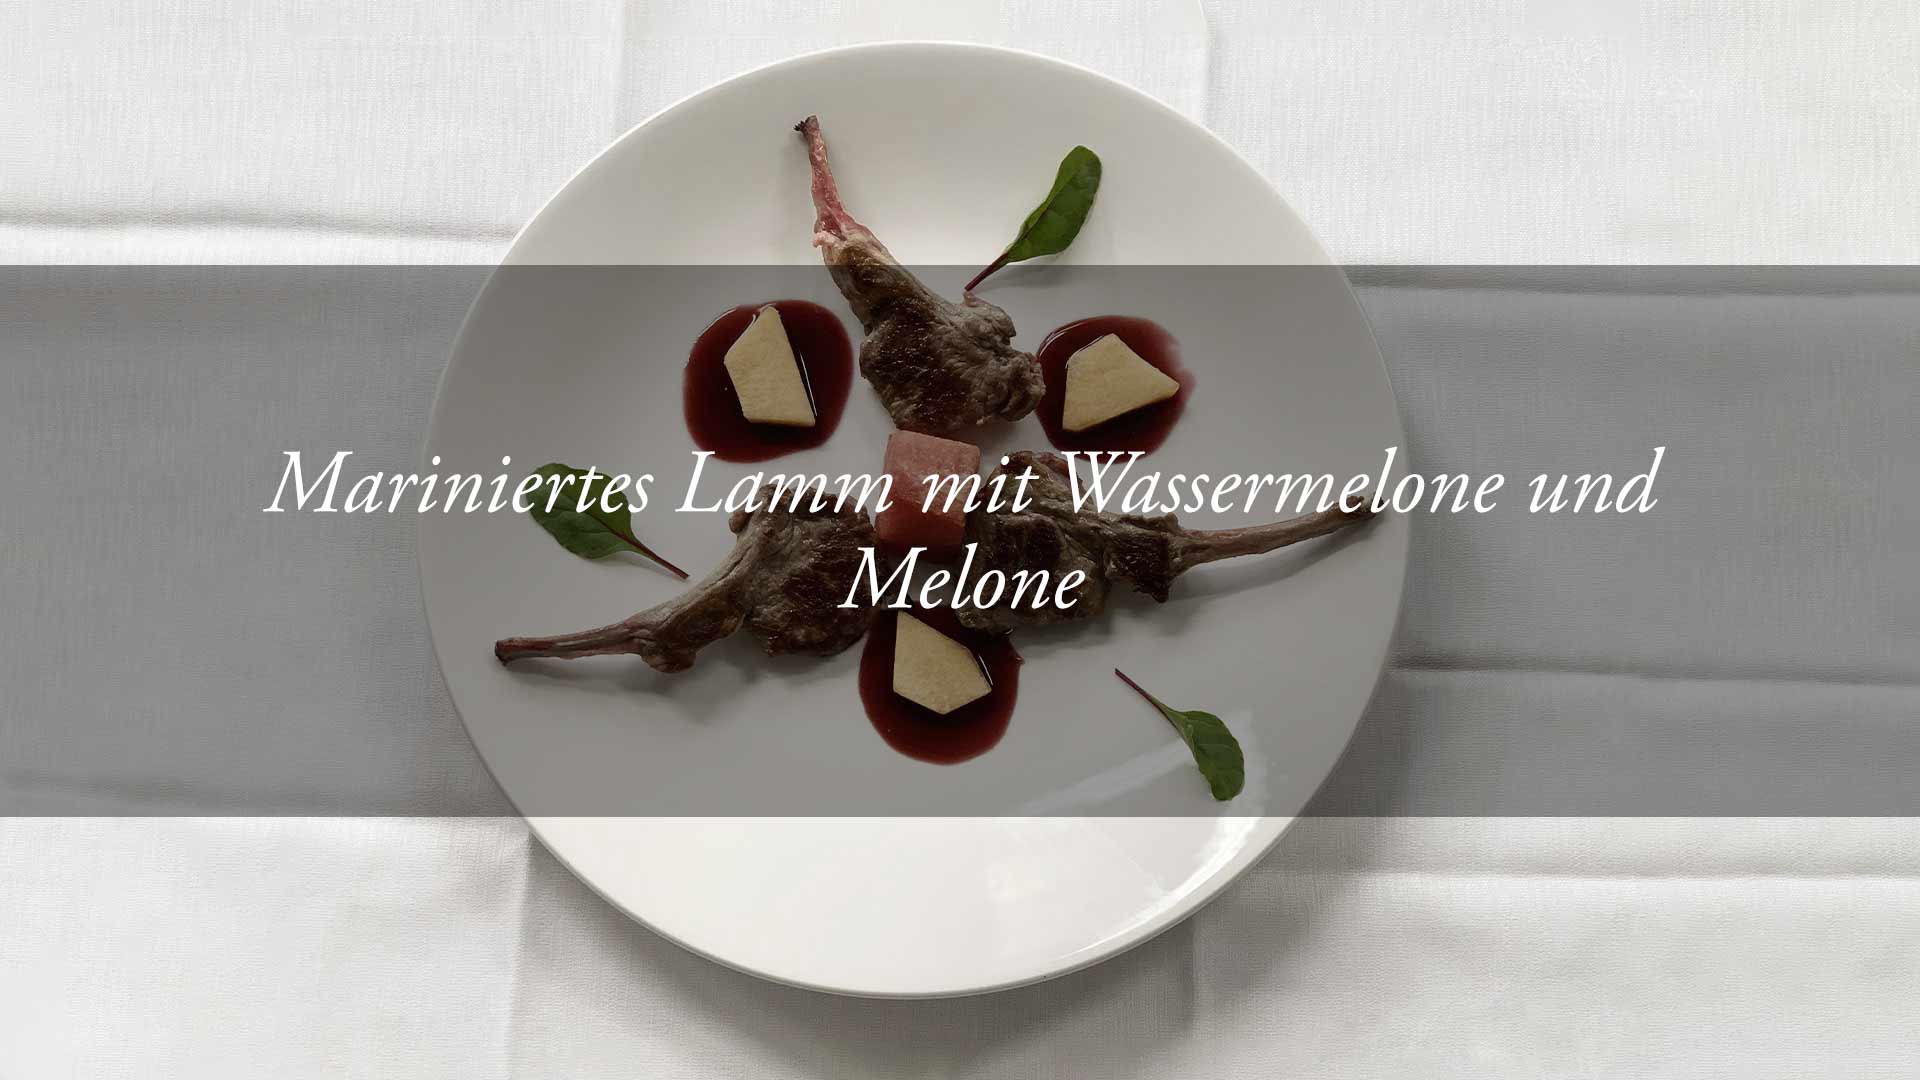 Mariniertes Lamm mit Wassermelone und Melone in Myrtensauce - Blog ...